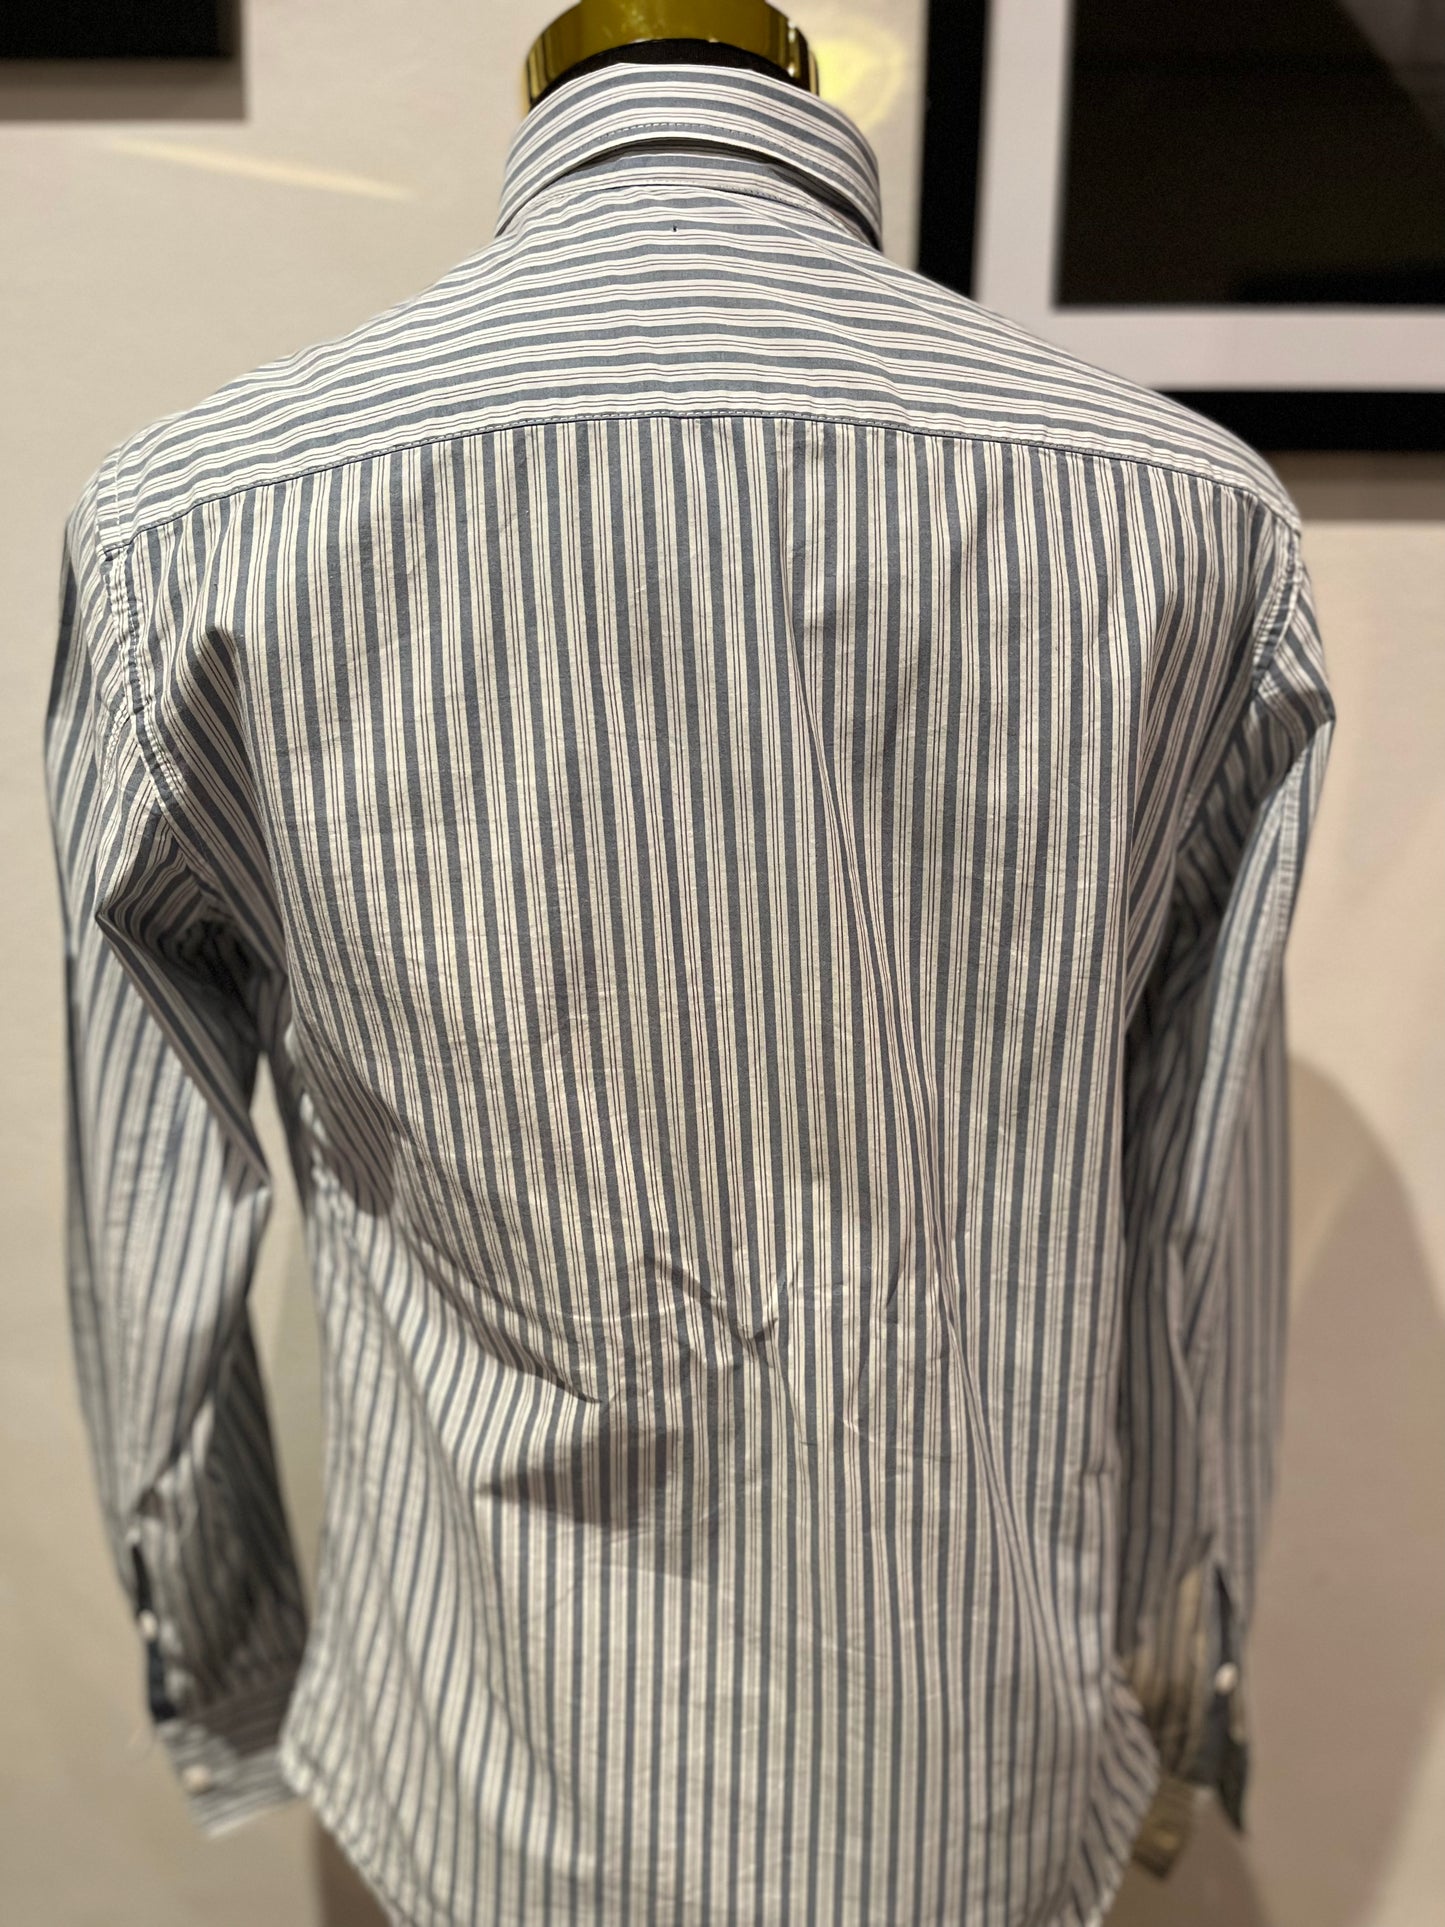 Armani Armani Jeans 100% Cotton White / Grey Stripe Shirt Size S